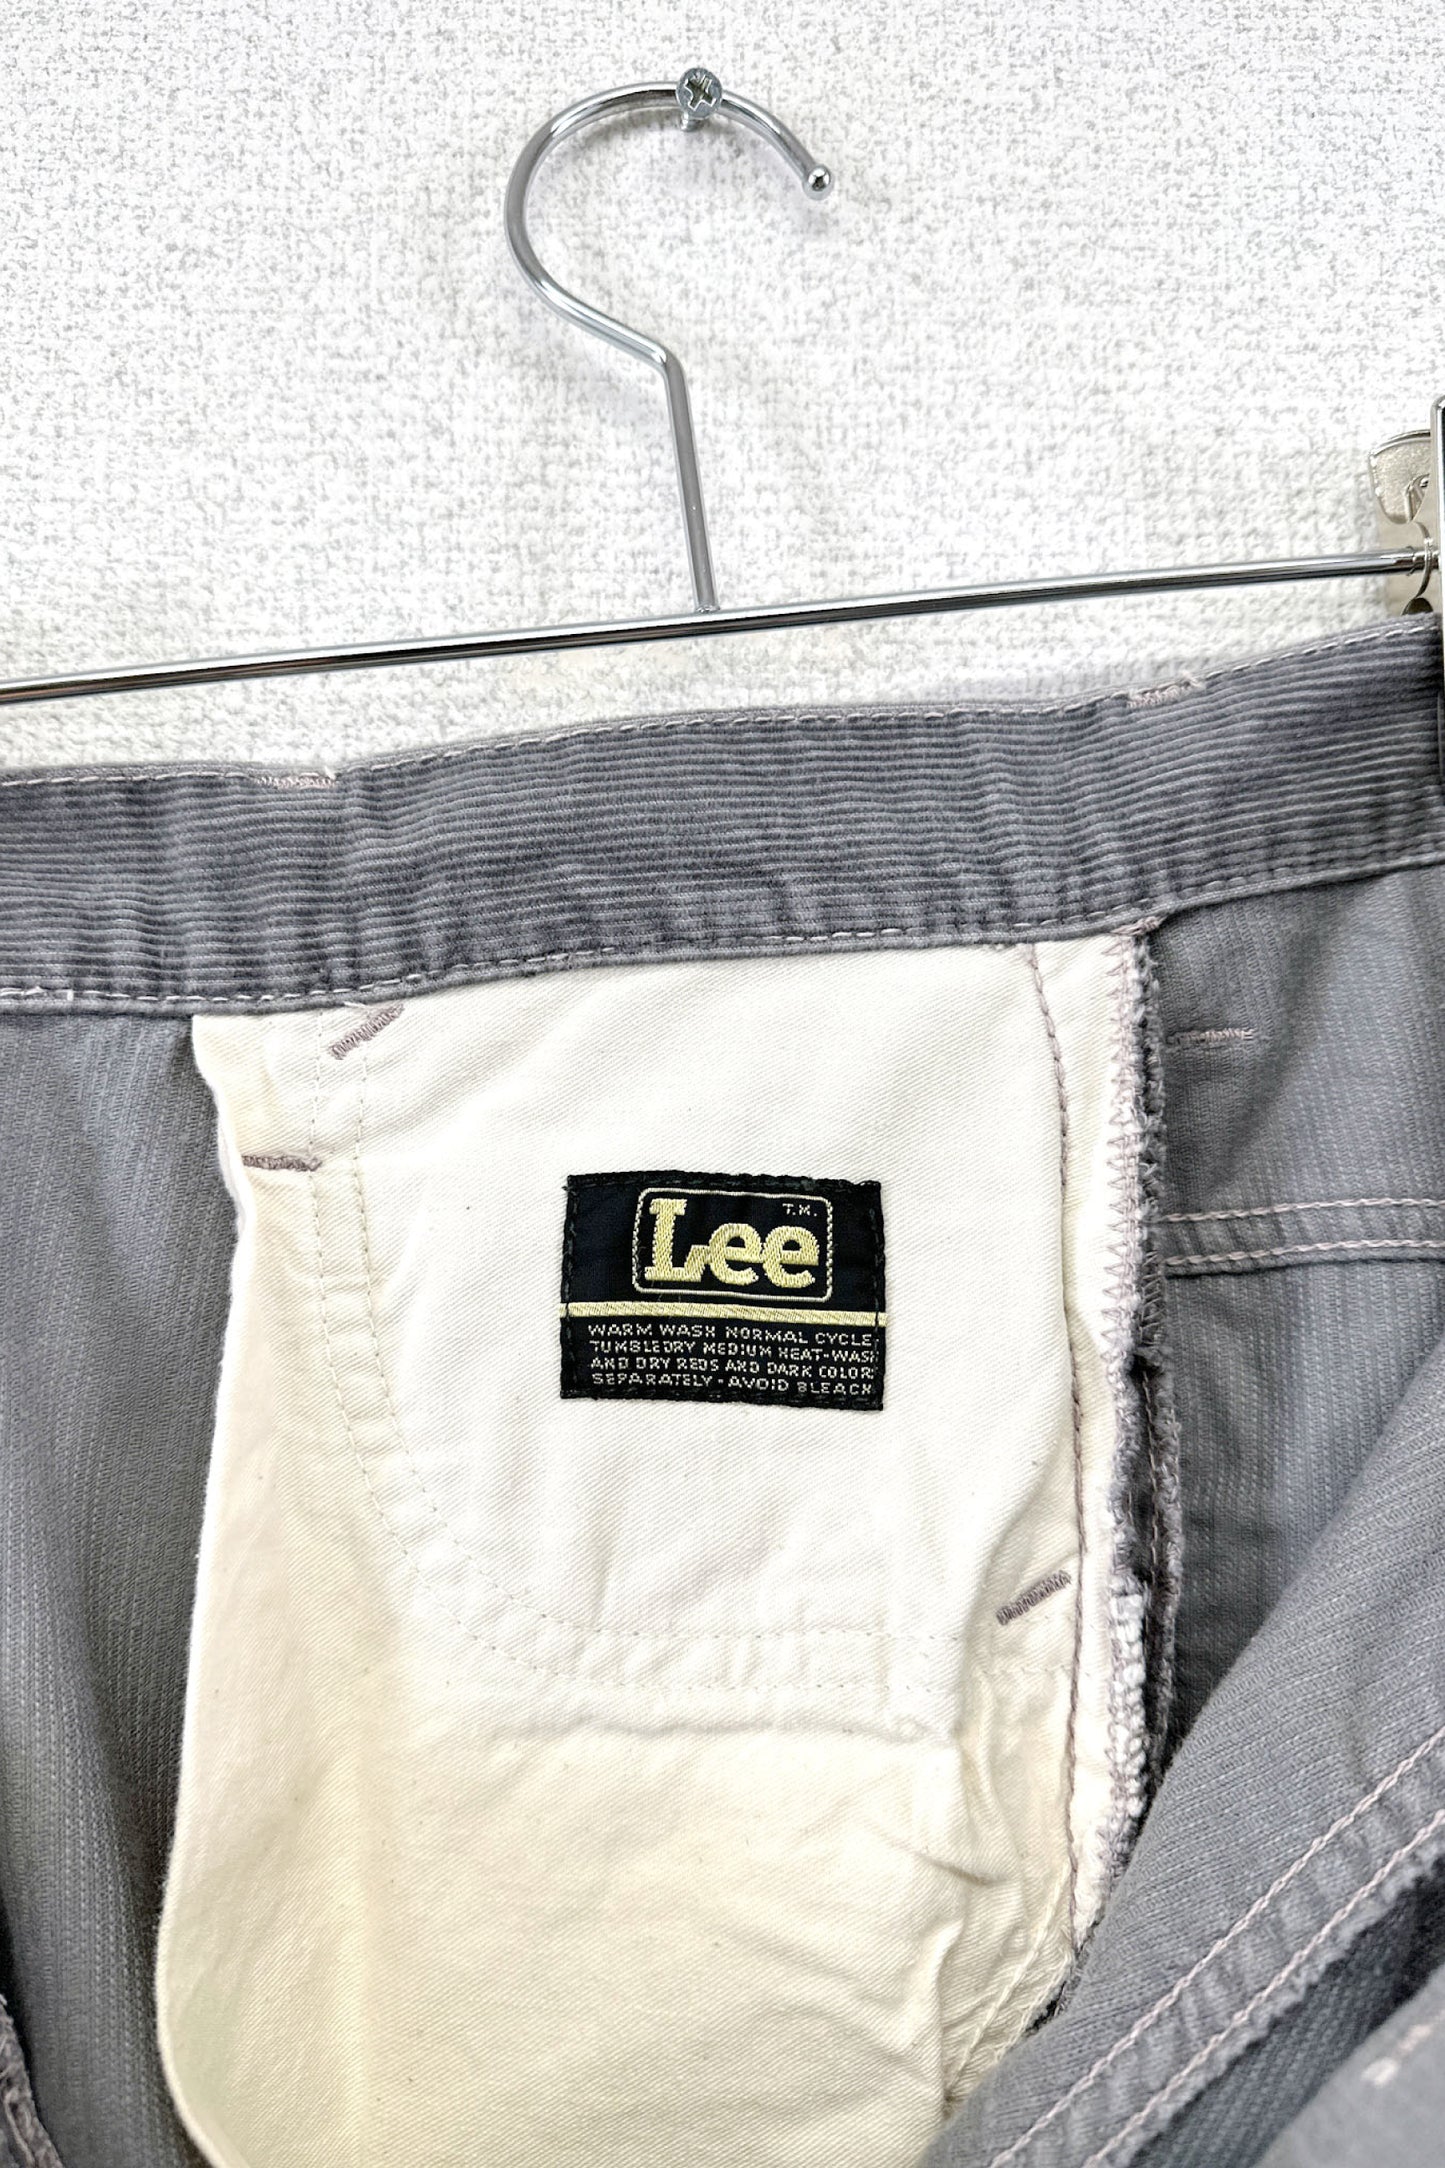 Lee grey corduroy pants